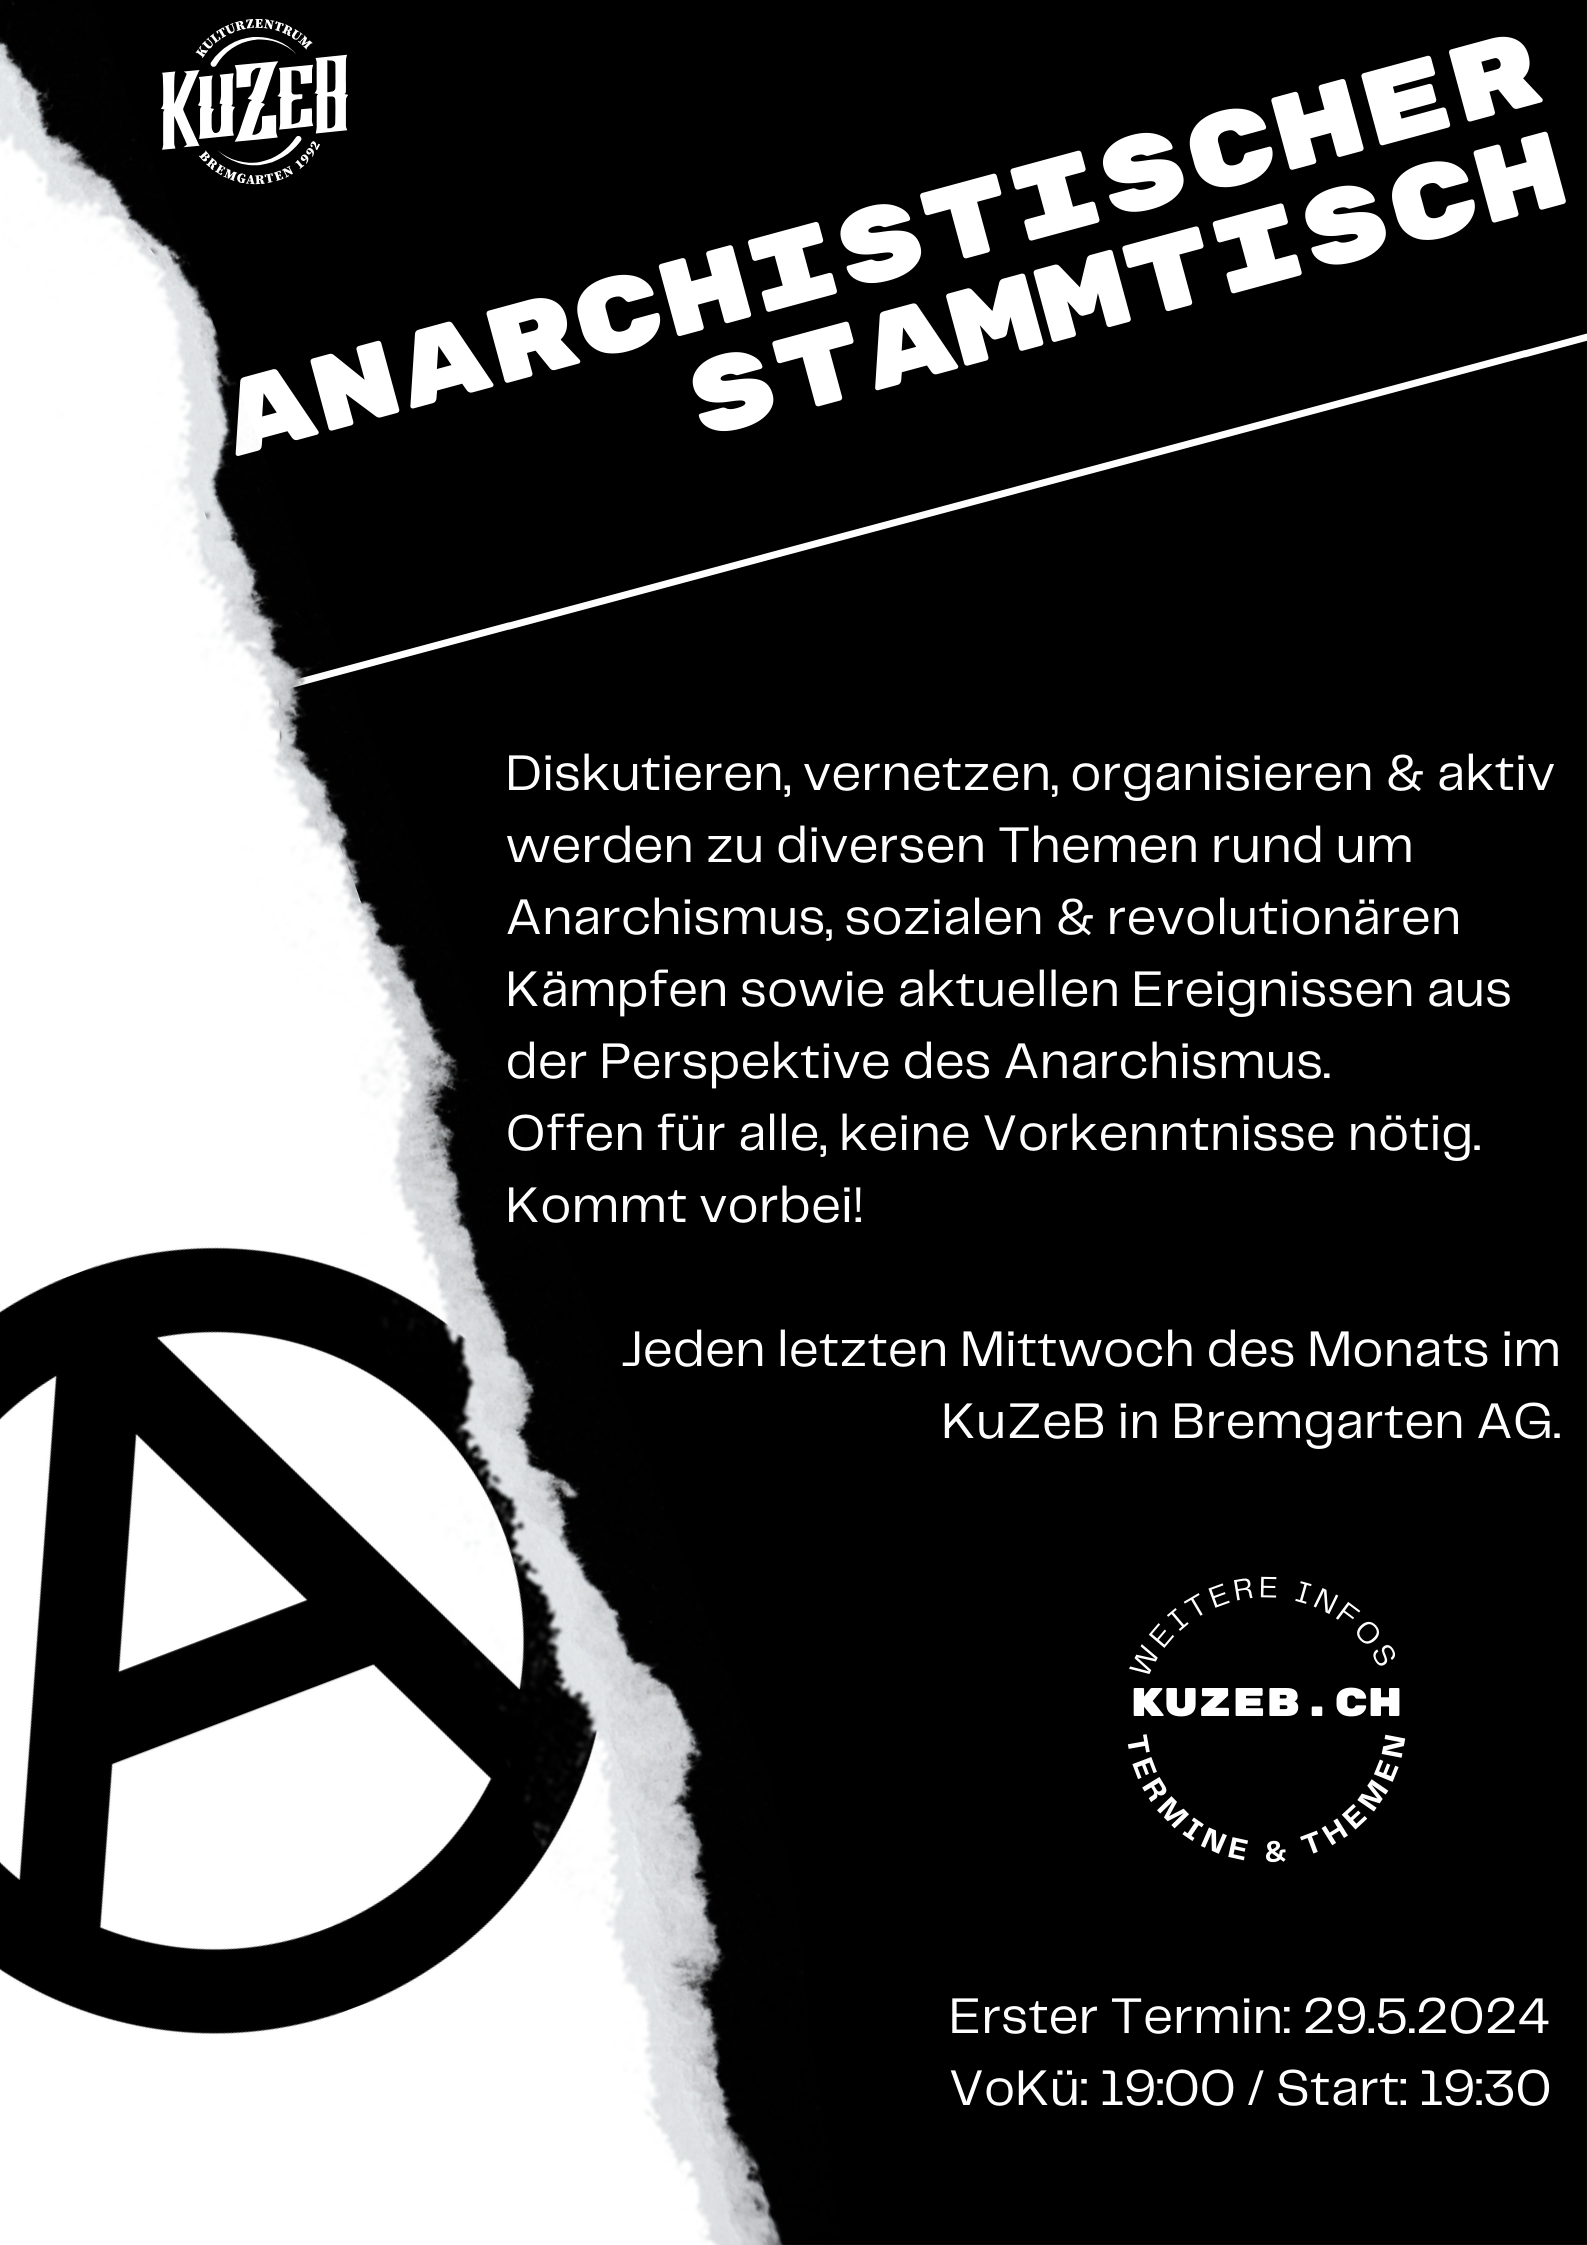 Anarchistischer Stammtisch